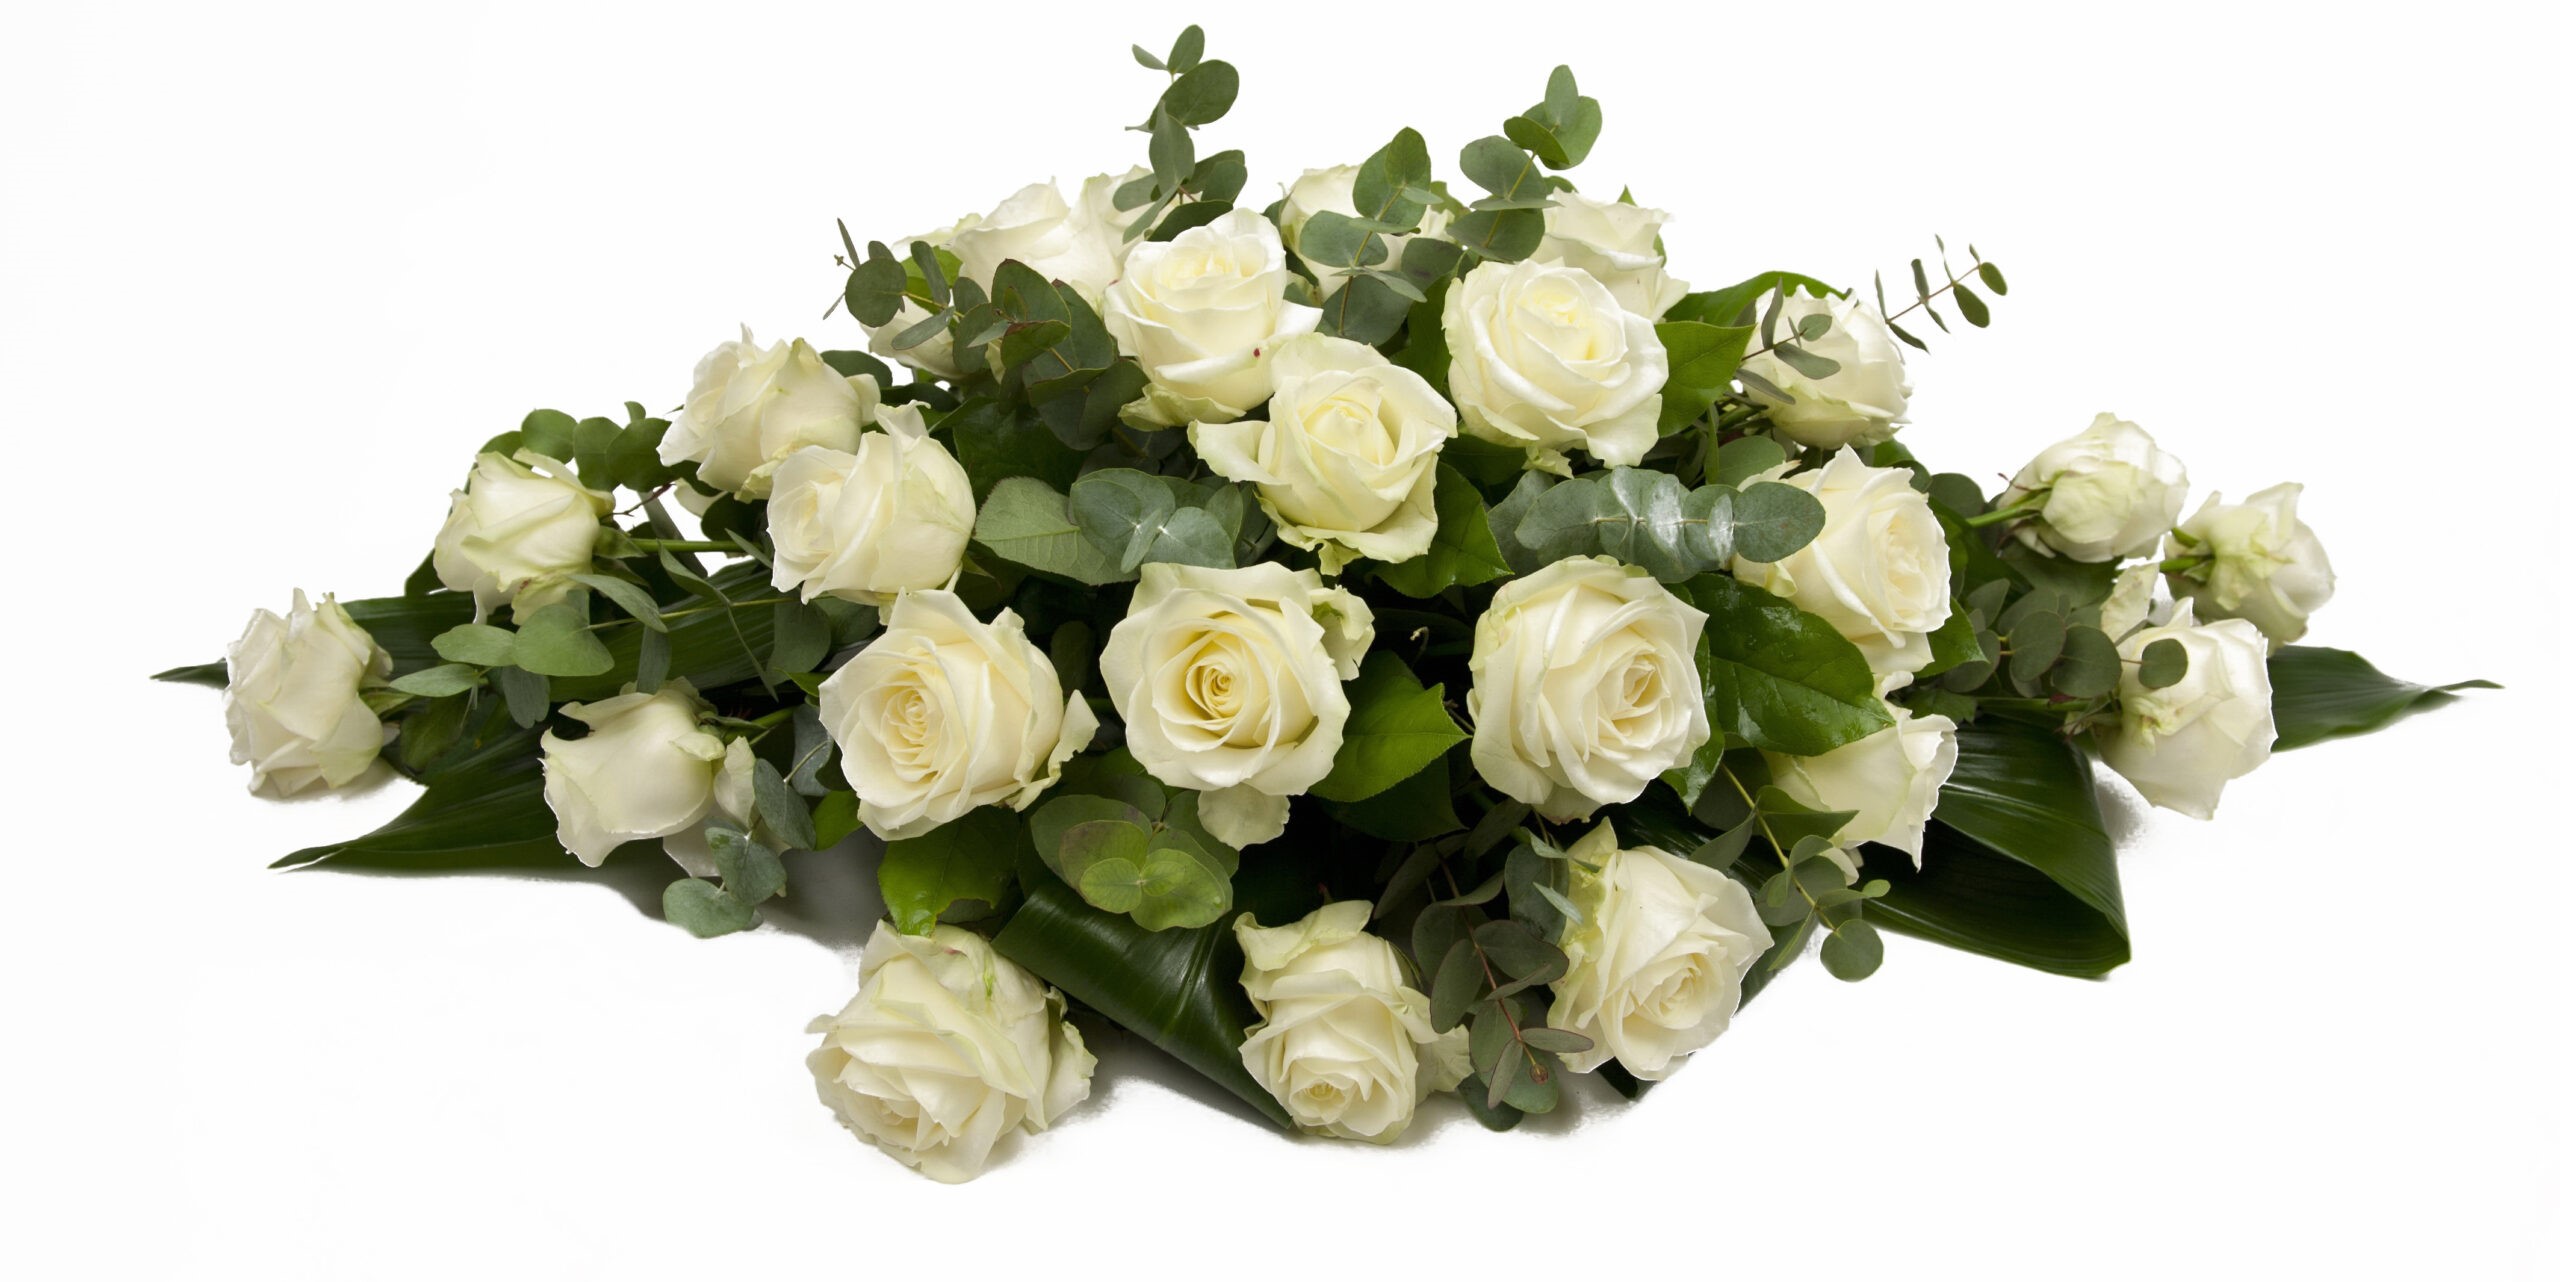 Afscheidsbloemen bloemstuk witte rozen scaled kopie